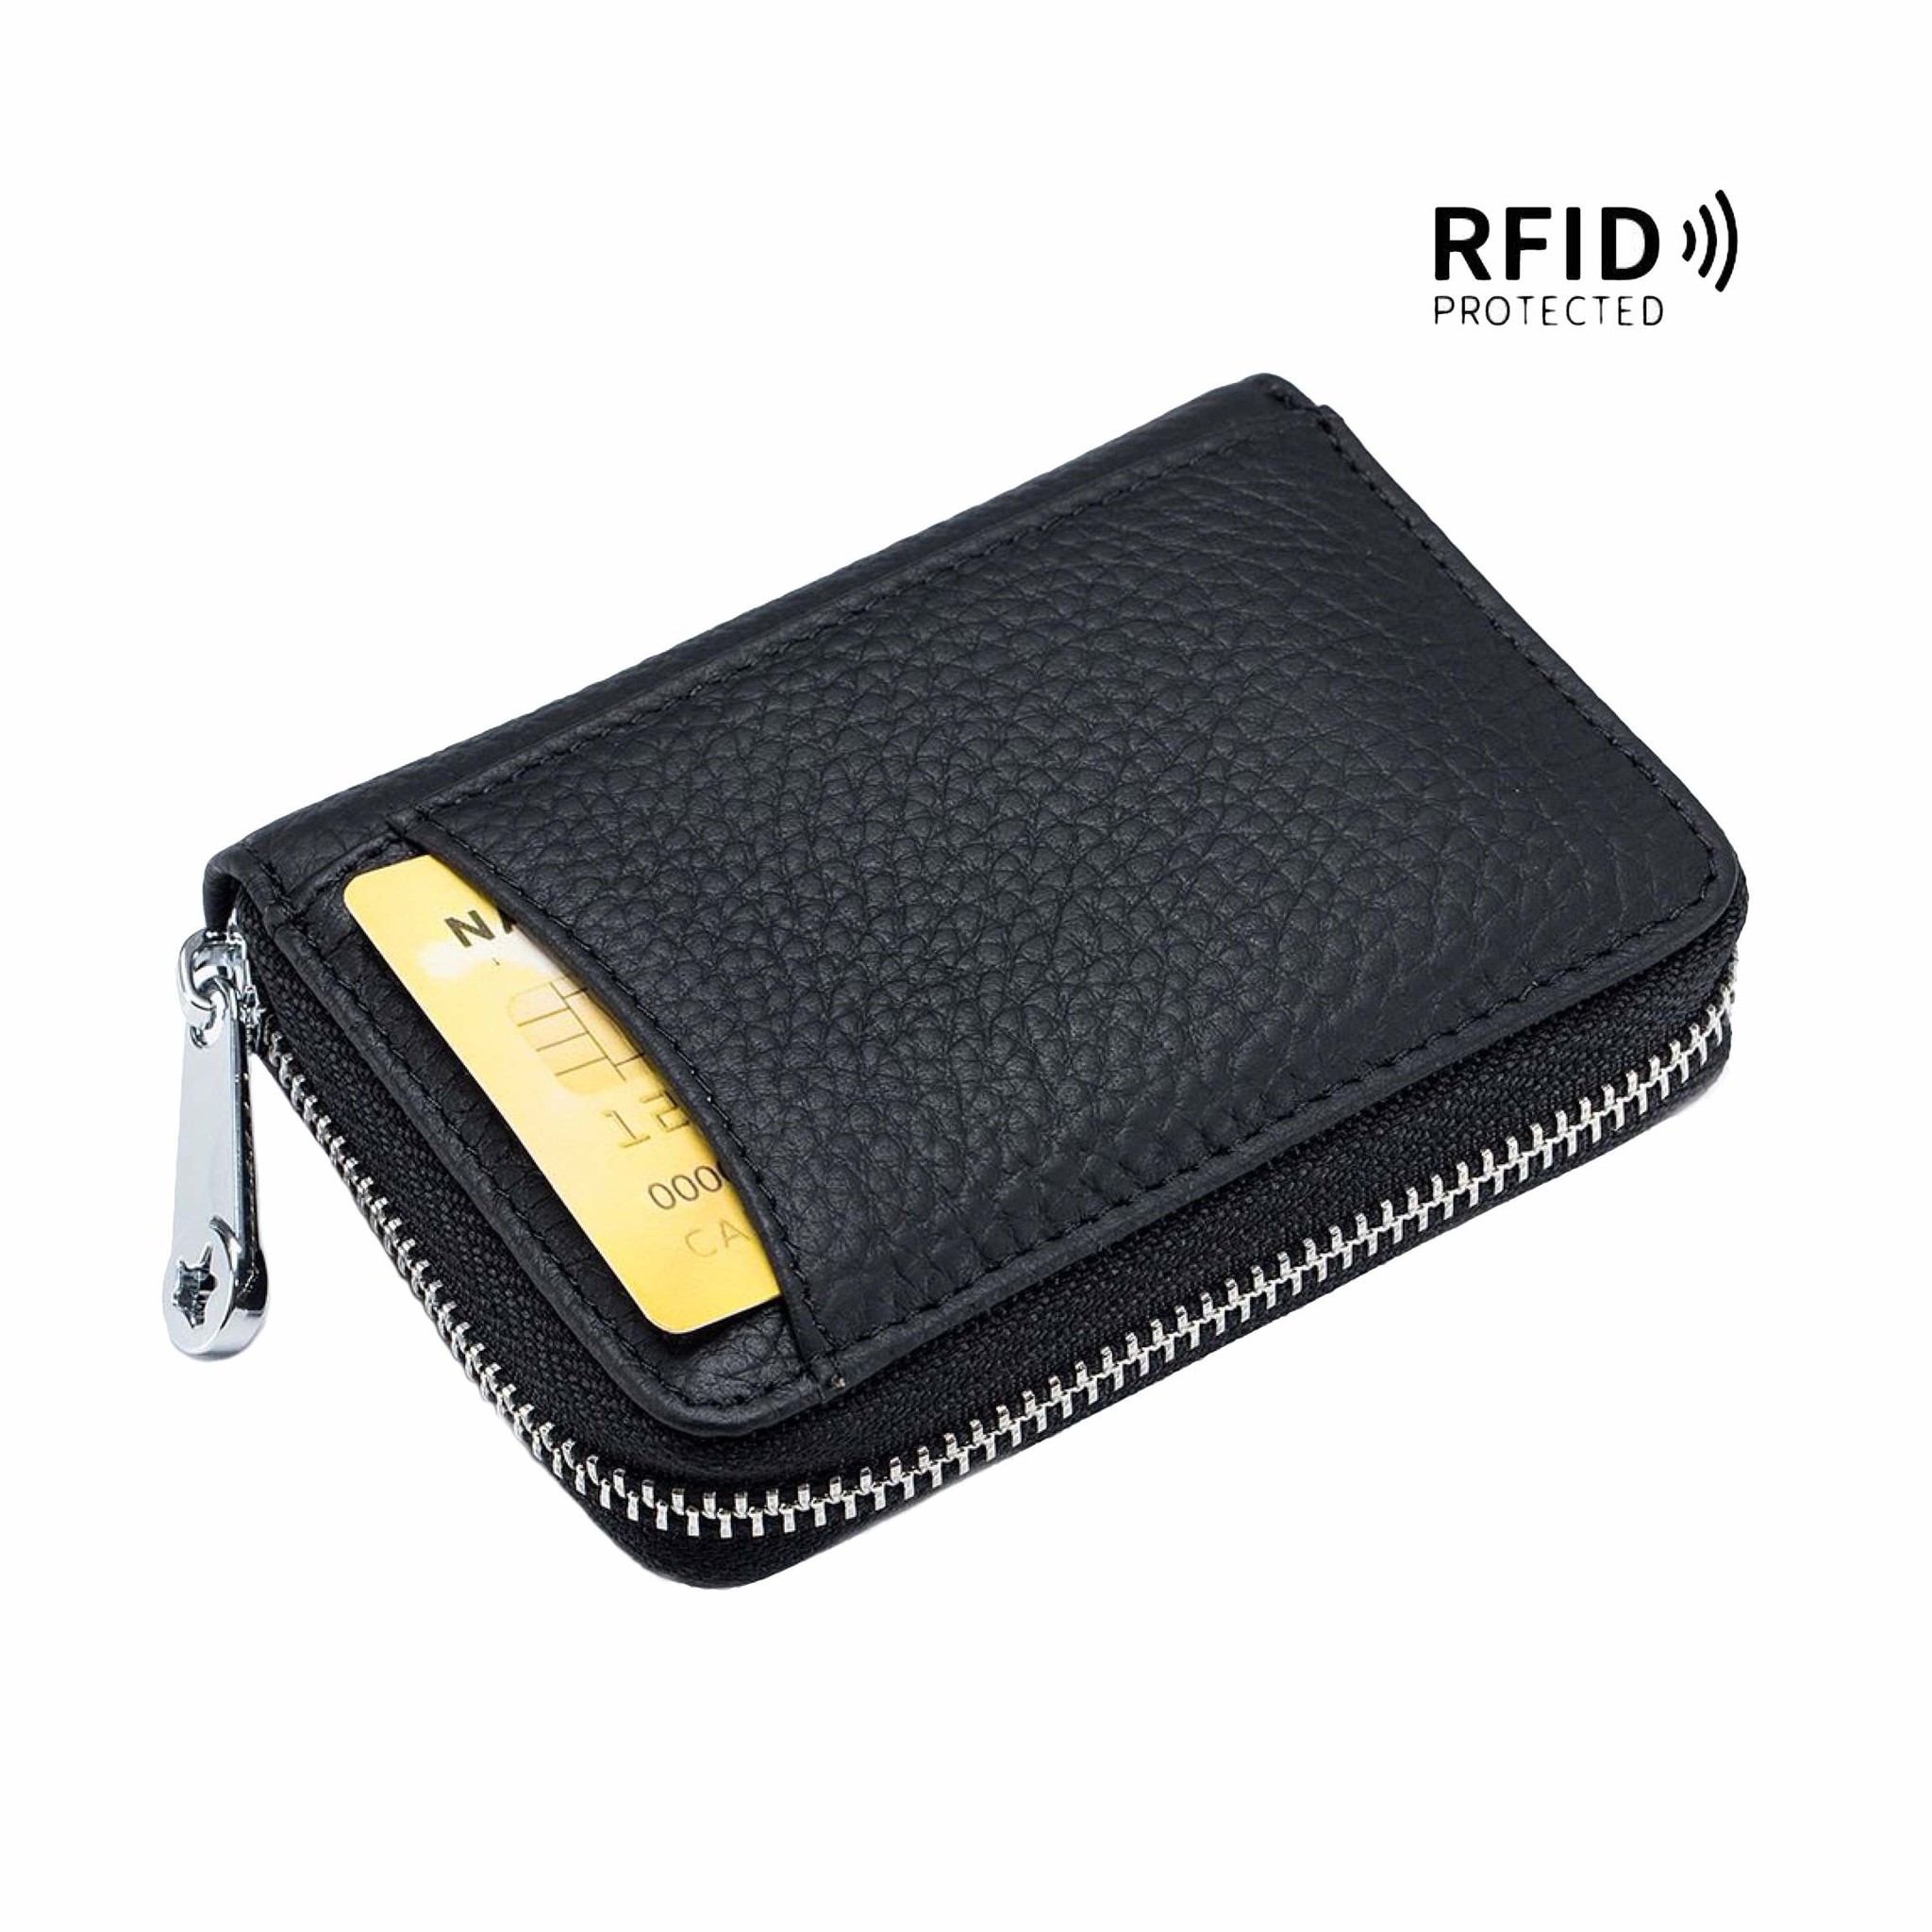 Geldbörse für Damen aus echtem Leder - Kartenfächer, RFID-Abschirmung, Münzfach - Kleine Geldbörse - Blau-4